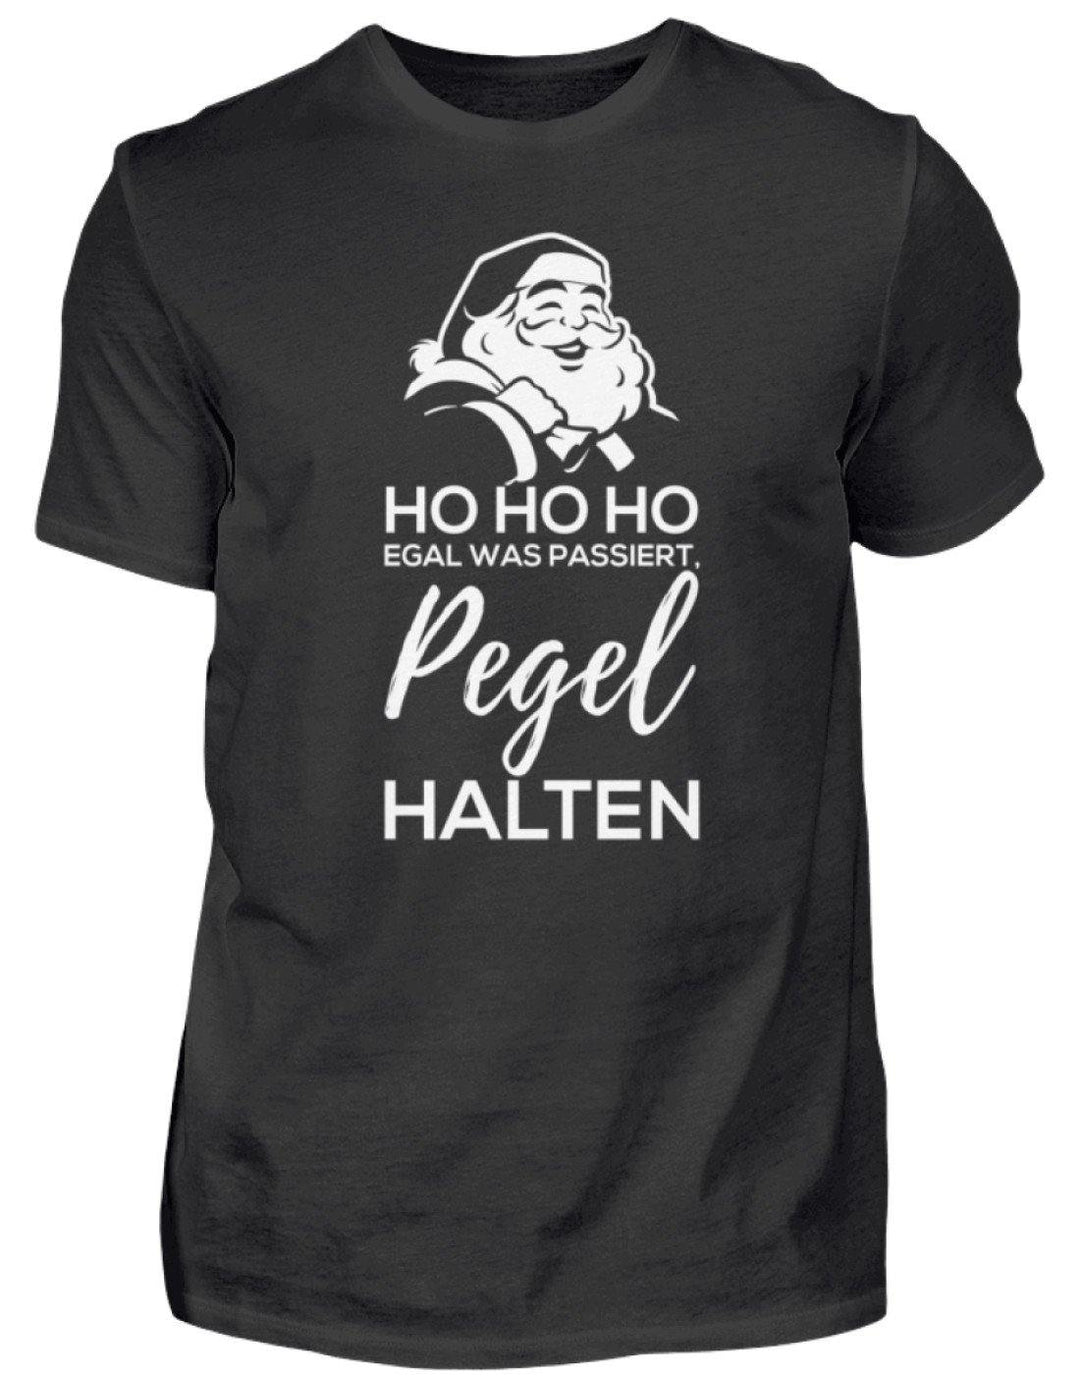 Santa Pegel halten - Words on Shirts  - Herren Shirt - Words on Shirts Sag es mit dem Mittelfinger Shirts Hoodies Sweatshirt Taschen Gymsack Spruch Sprüche Statement